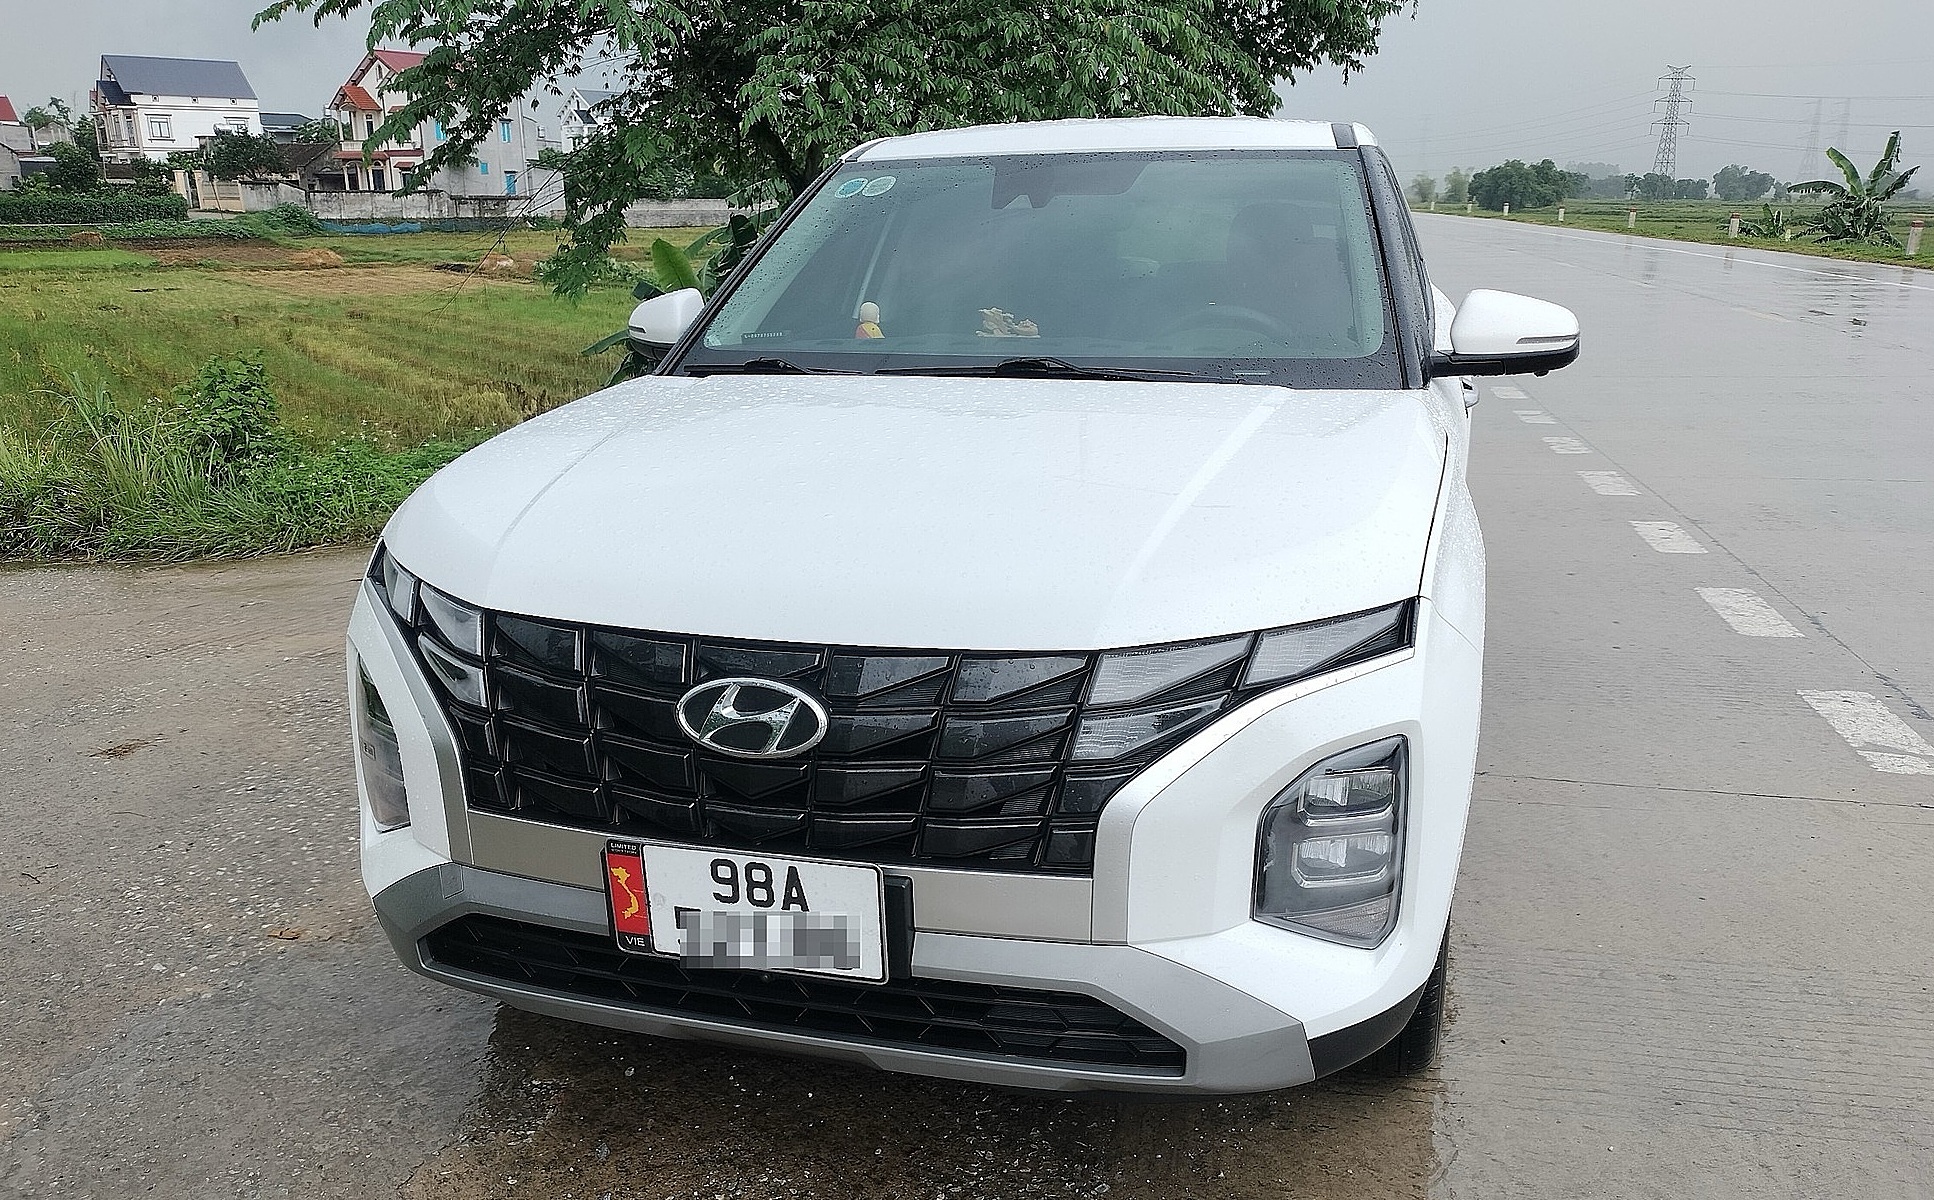 Mẫu xe bị hỏng hệ thống cảm biến lùi vì lắp thêm phụ kiện của anh Tuyên. Ảnh: Nguyễn Văn Tuyên